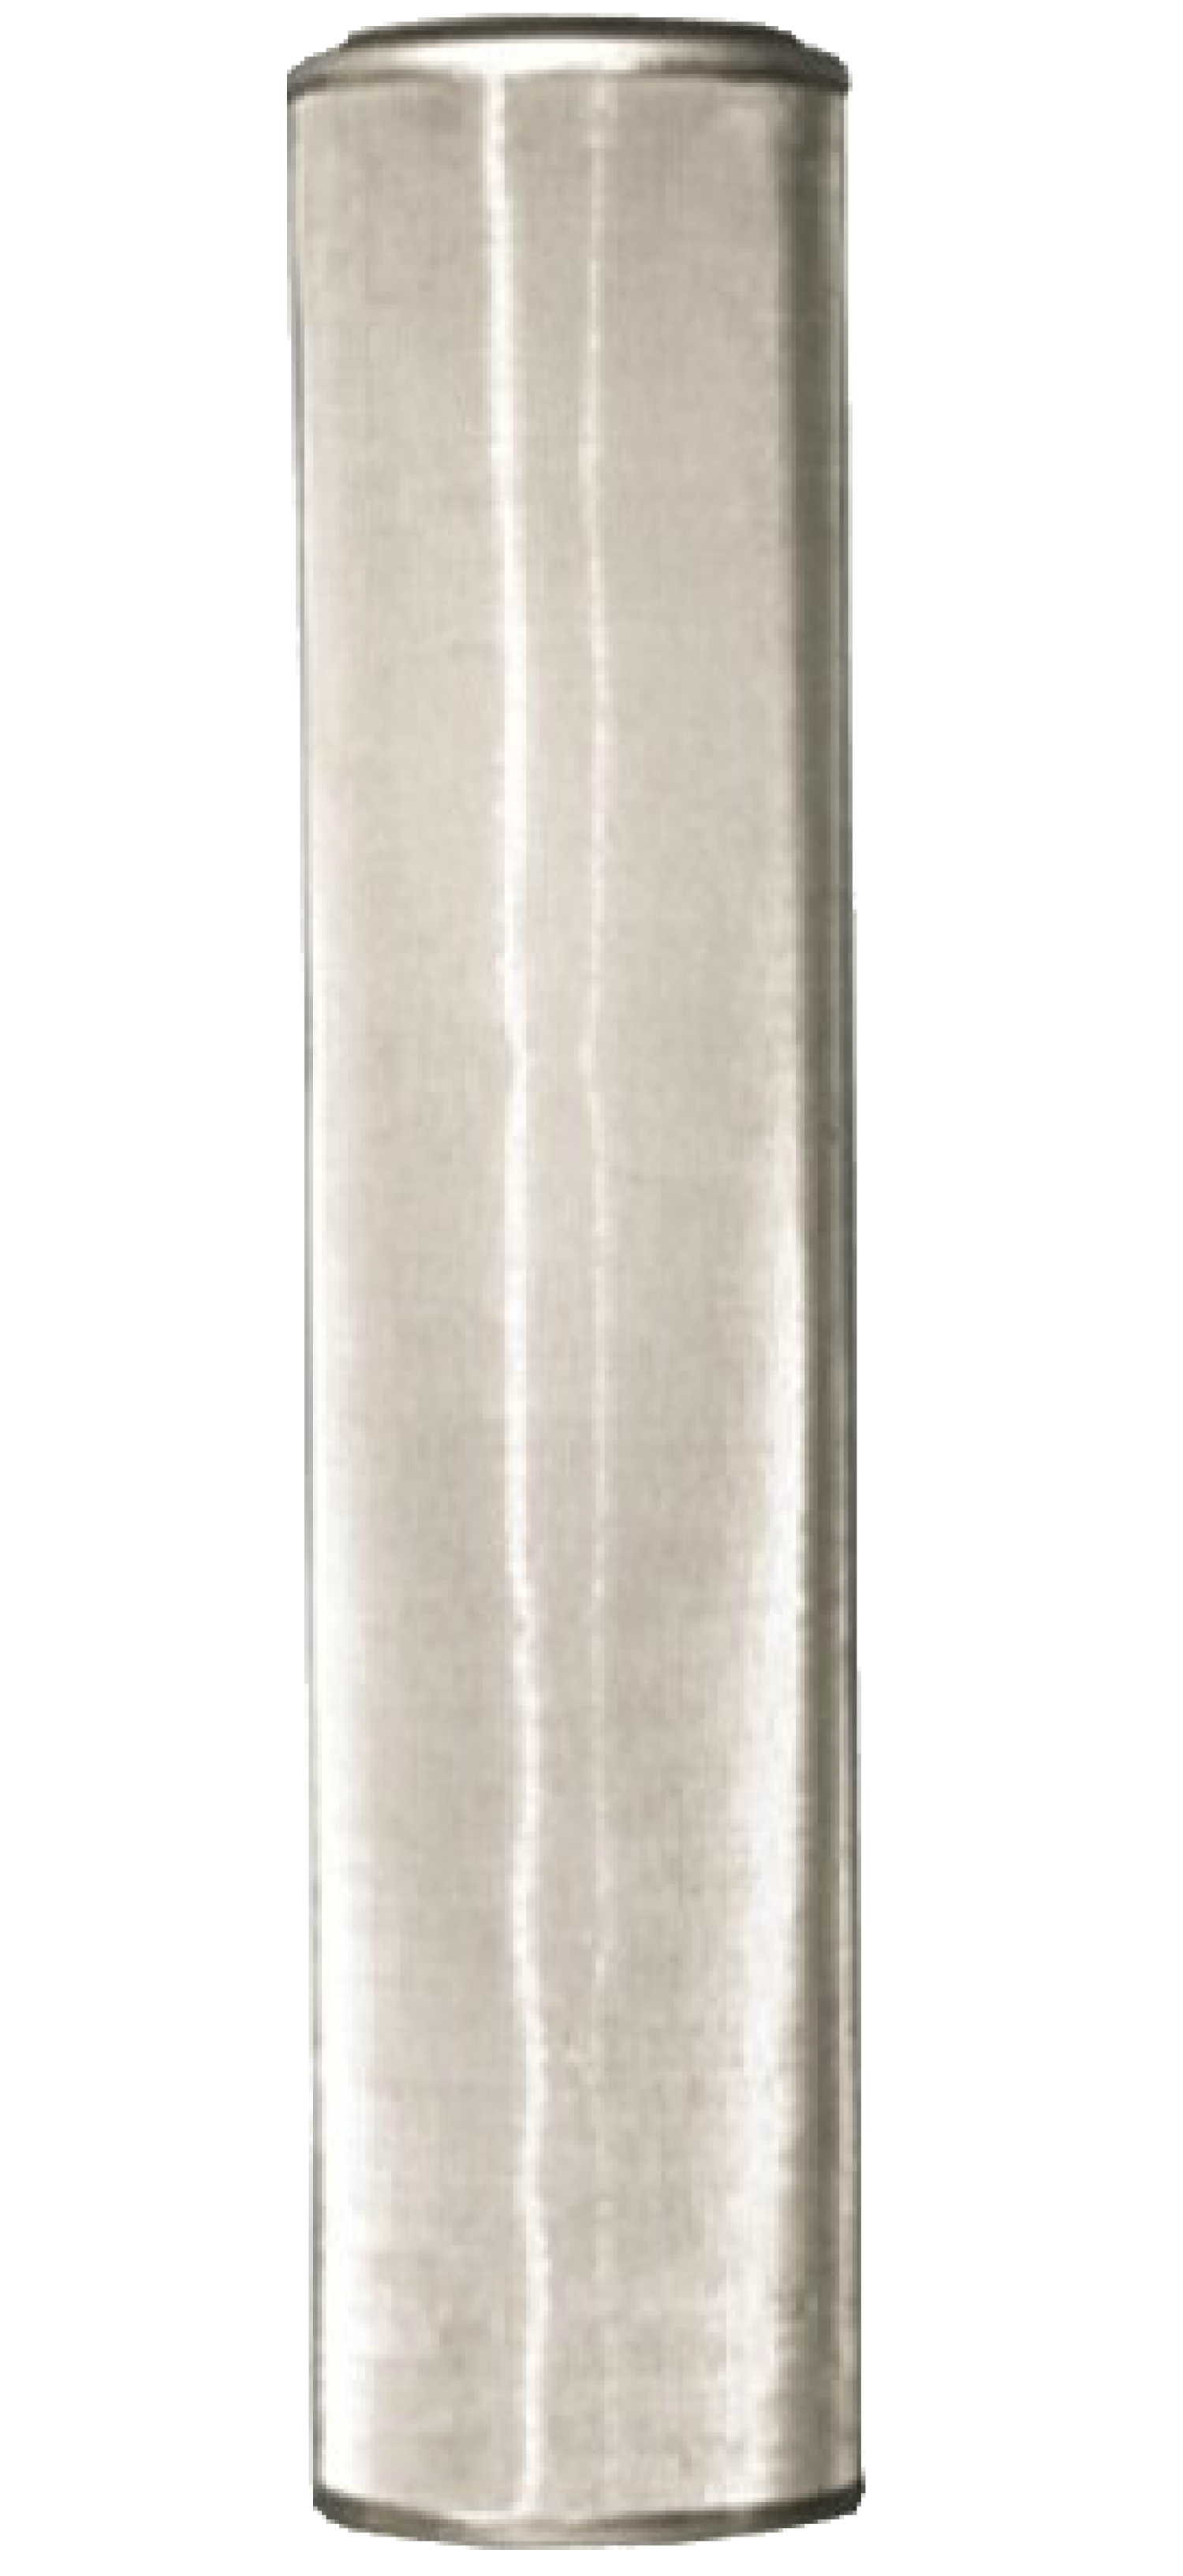 Металлический механический фильтр стандарта Big Blue 20"  LXF-20-100 (100 мкр)